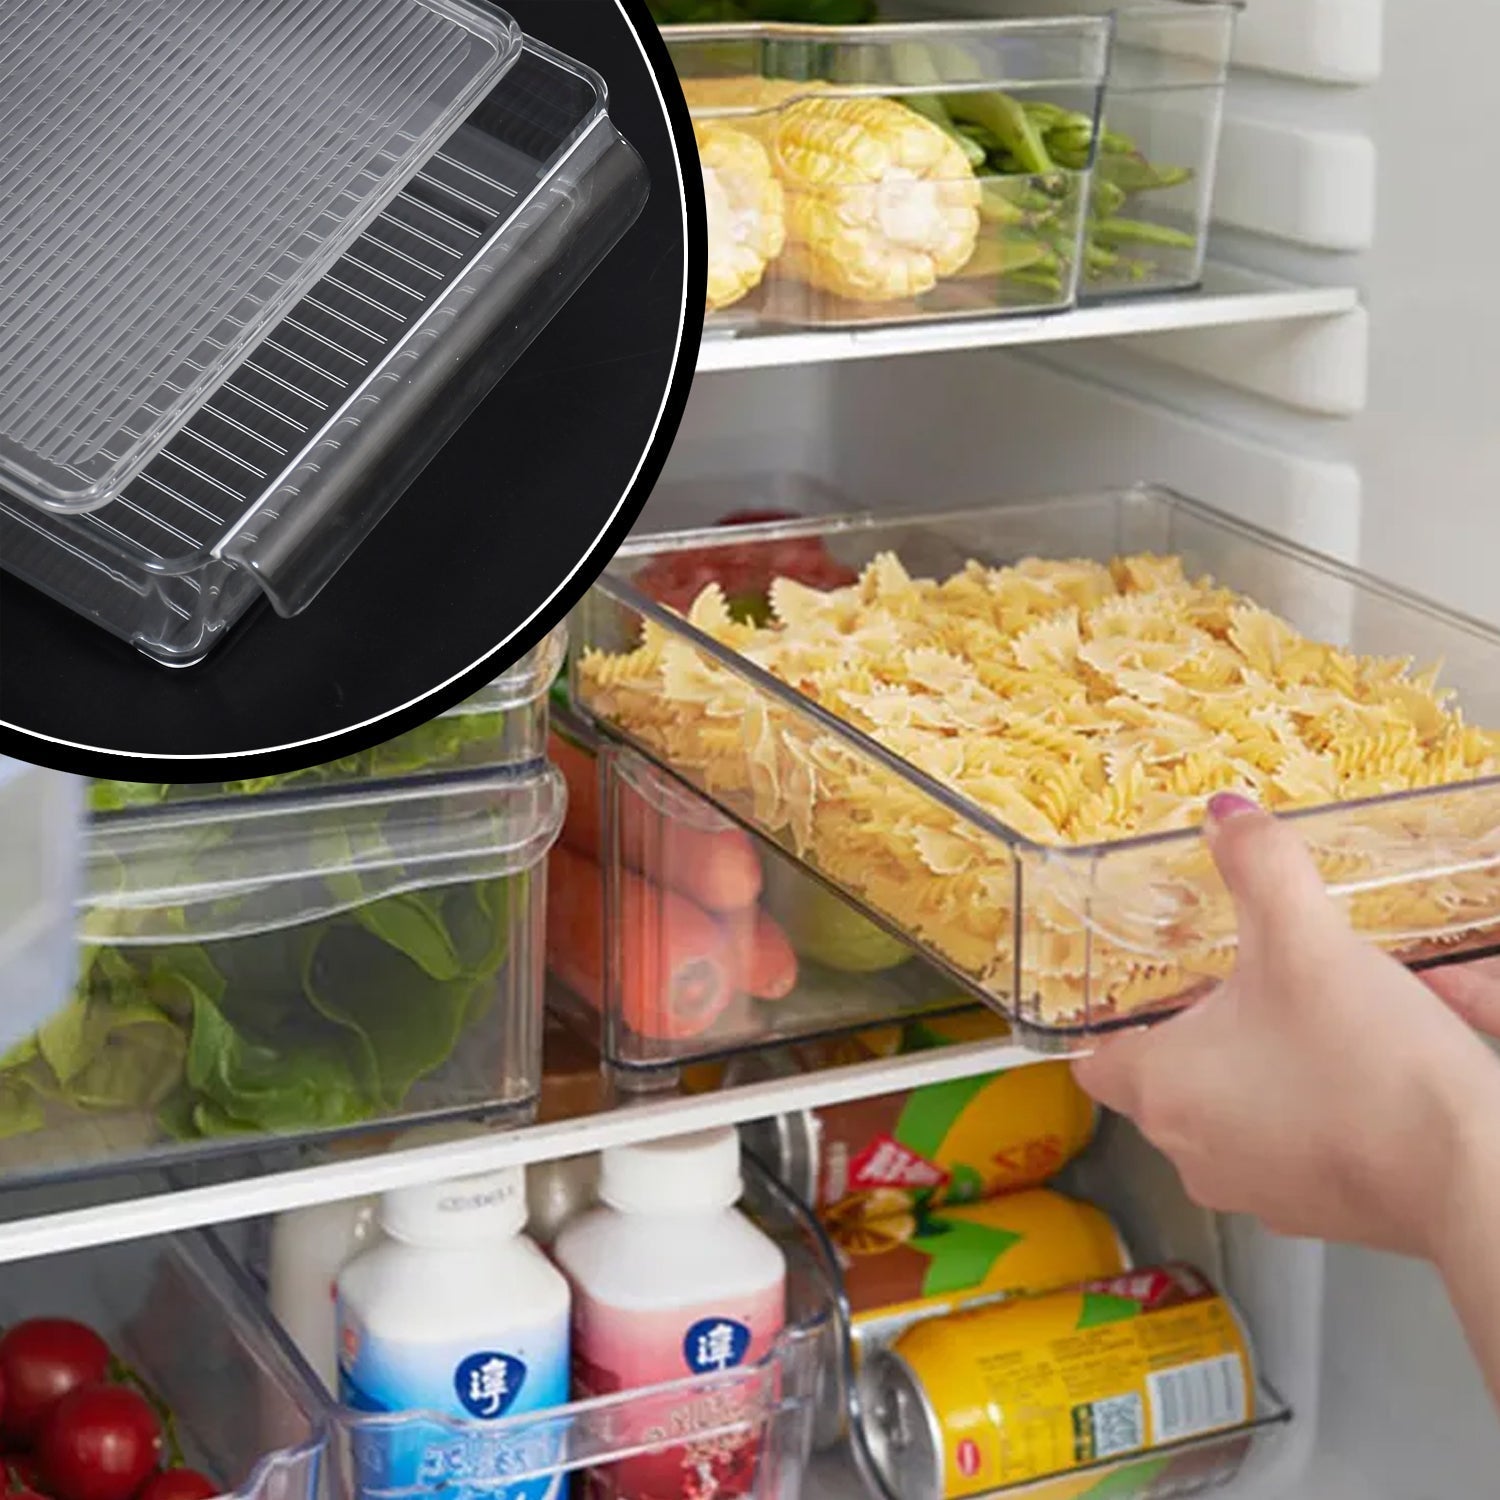 5248 Refrigerator Organizer Bins Stackable Fridge Organizers for Freezer, Kitchen, Cabinets Box 